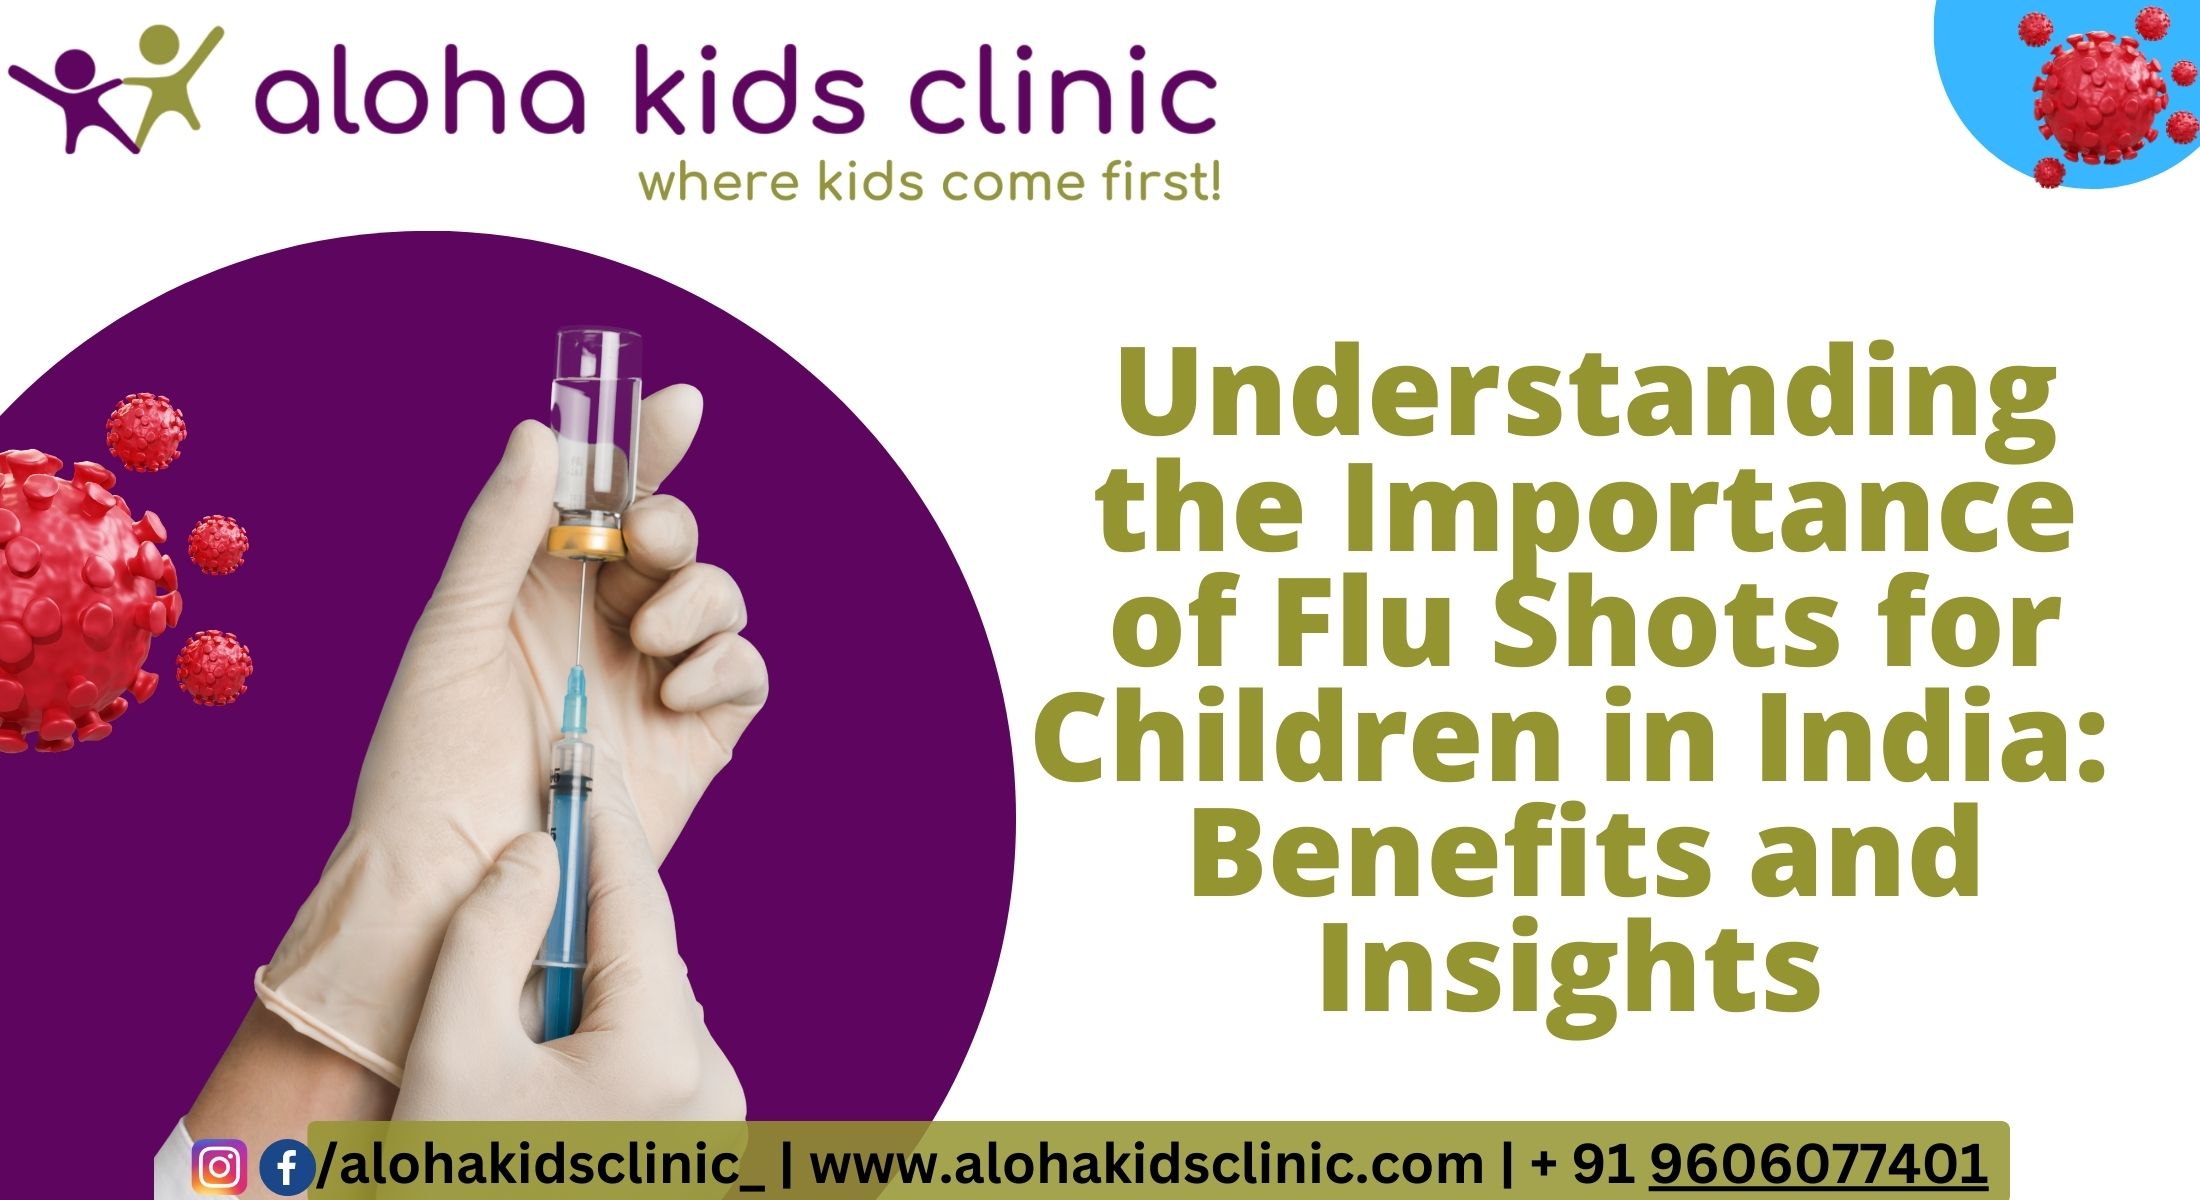 Flu Shots for Children's